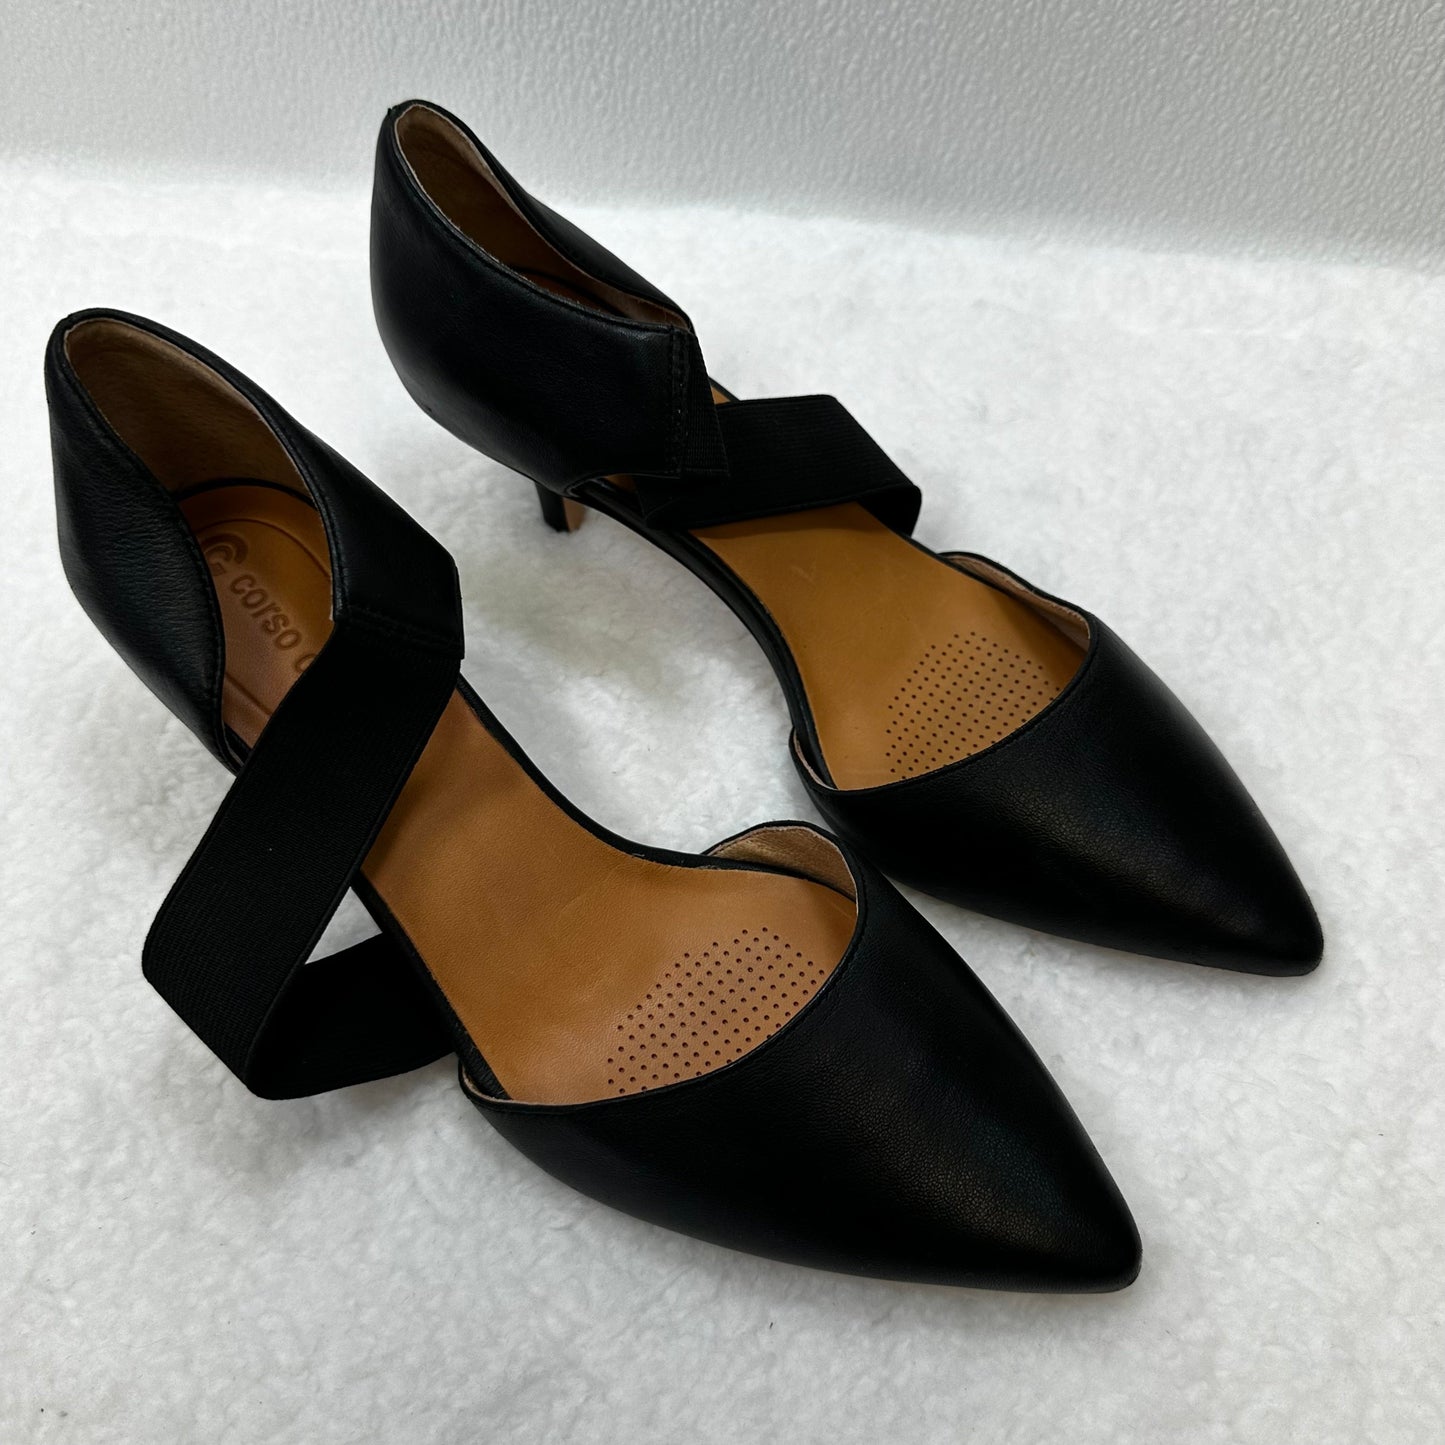 Black Shoes Heels Block Corso Cosmo, Size 8